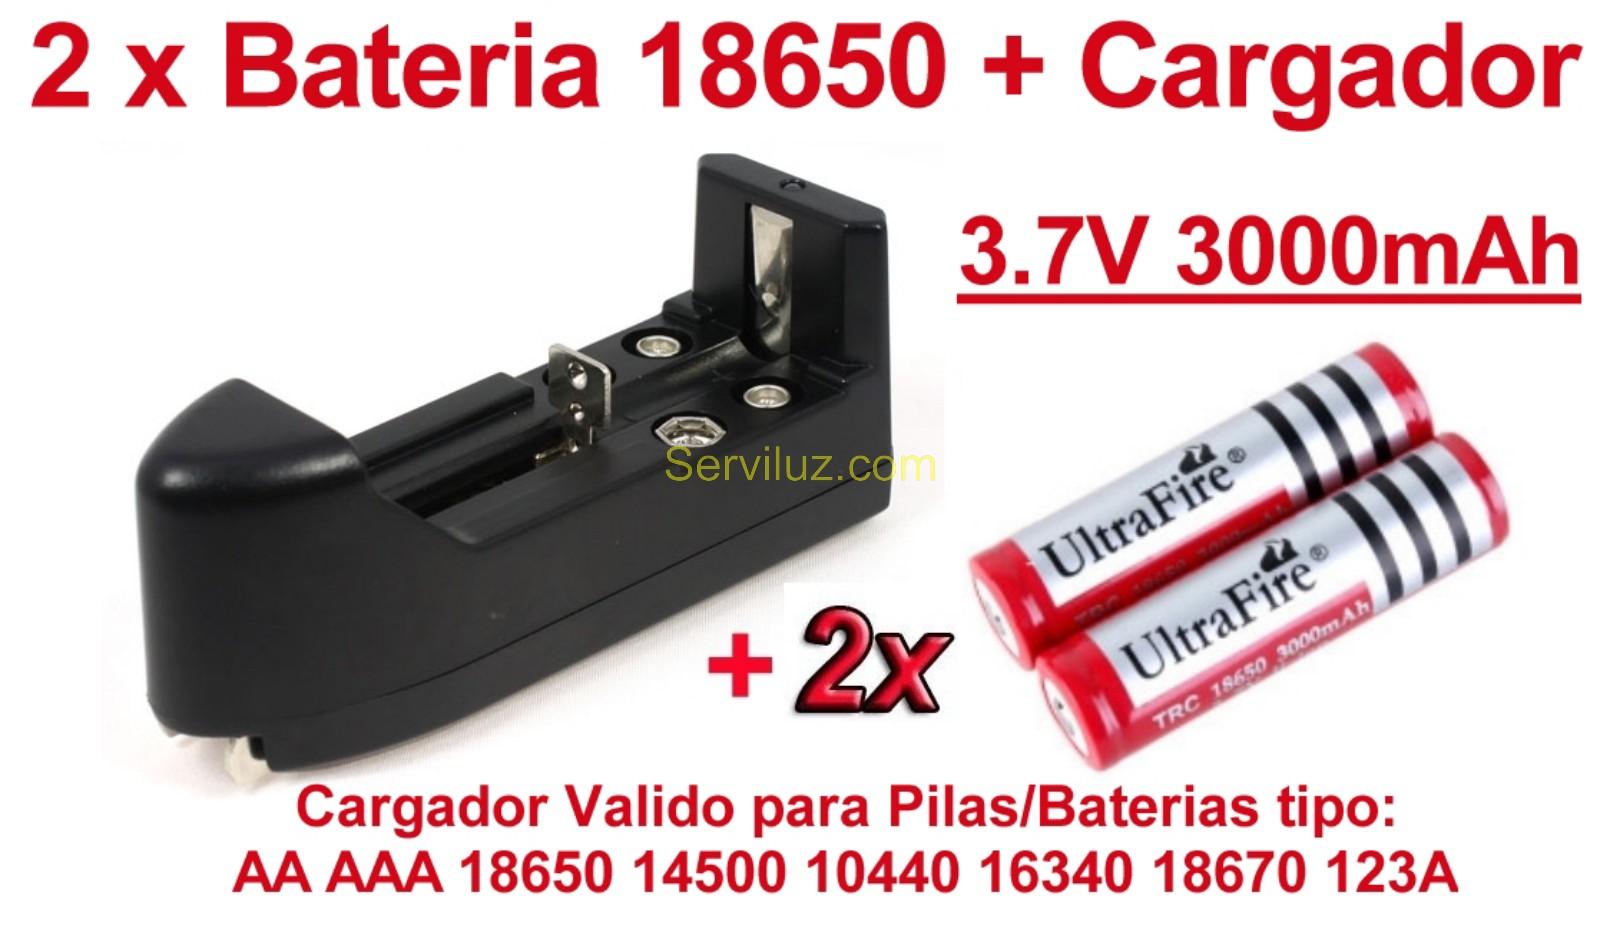 Foto 2 X Bateria Recargable 18650, 3000 Mah Li-ion + Multi Cargador